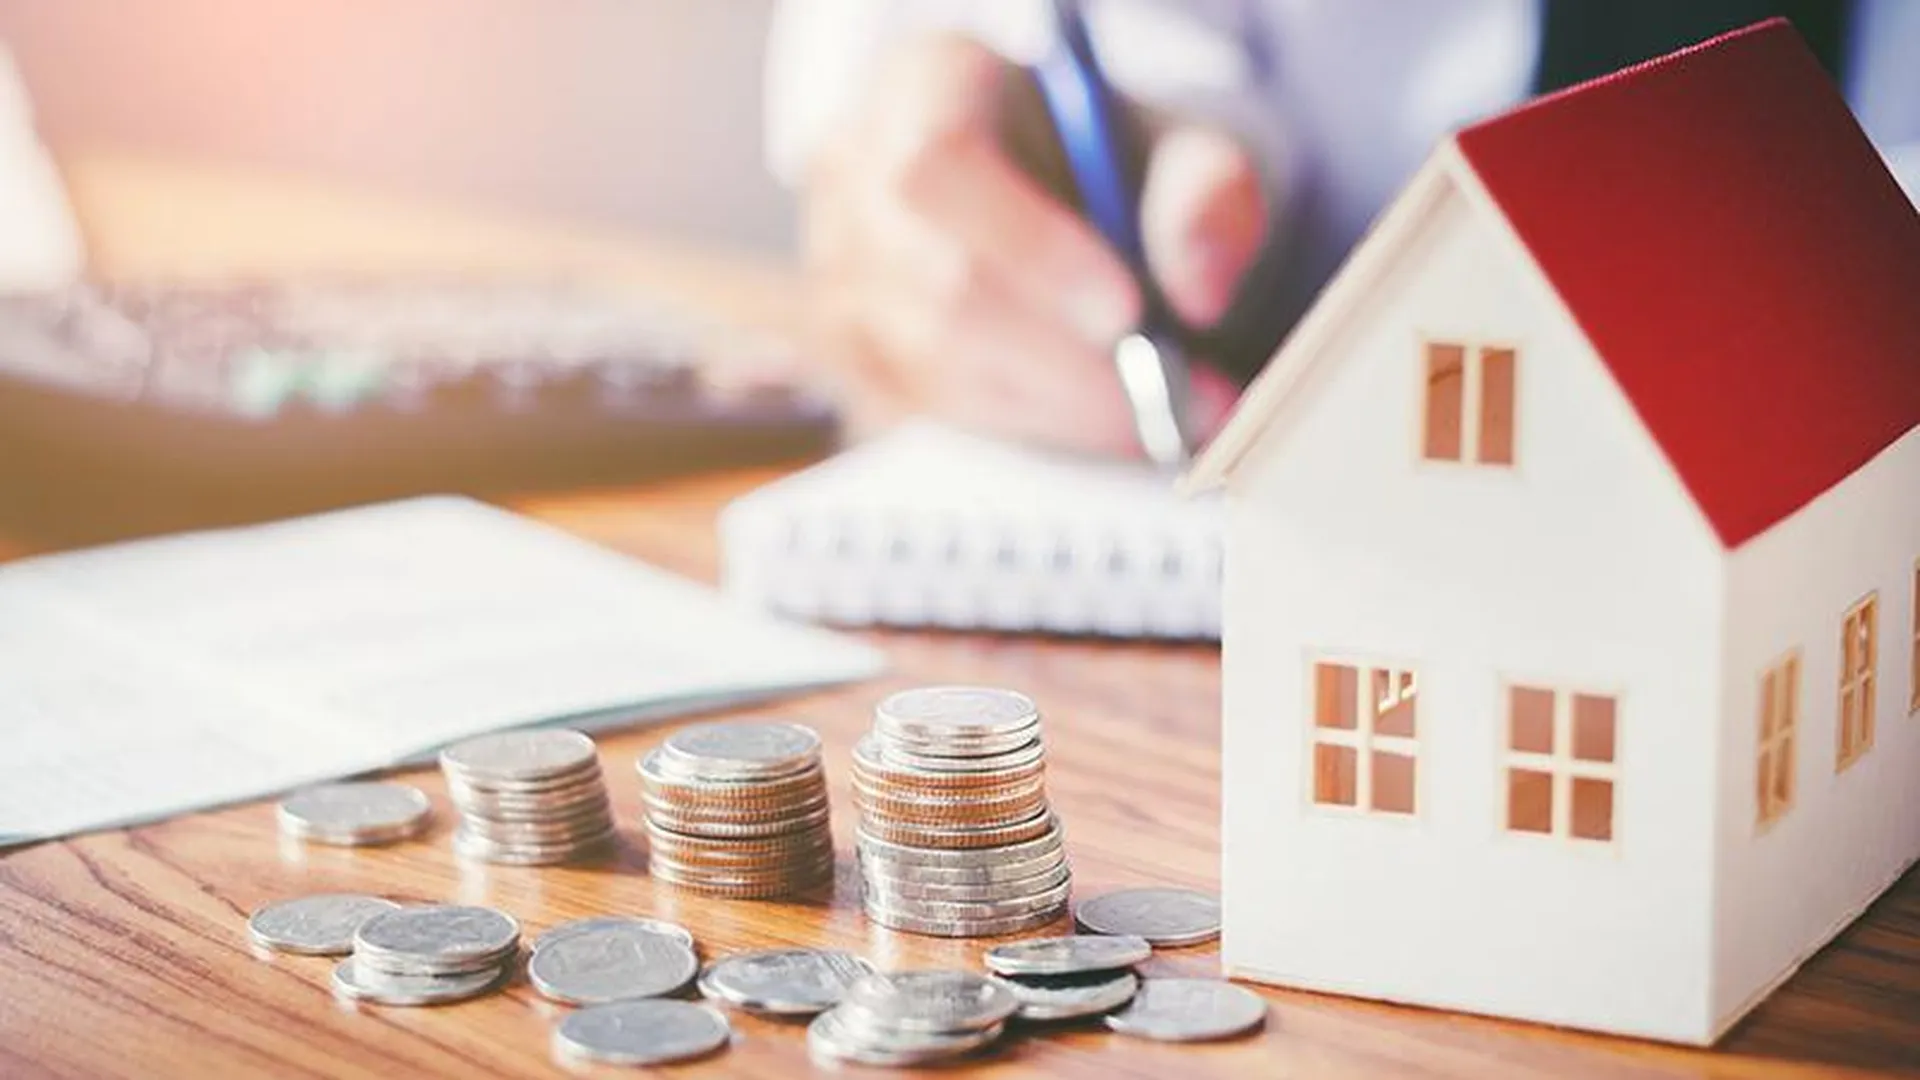 Эксперты: цены на квартиры будут расти медленнее инфляции